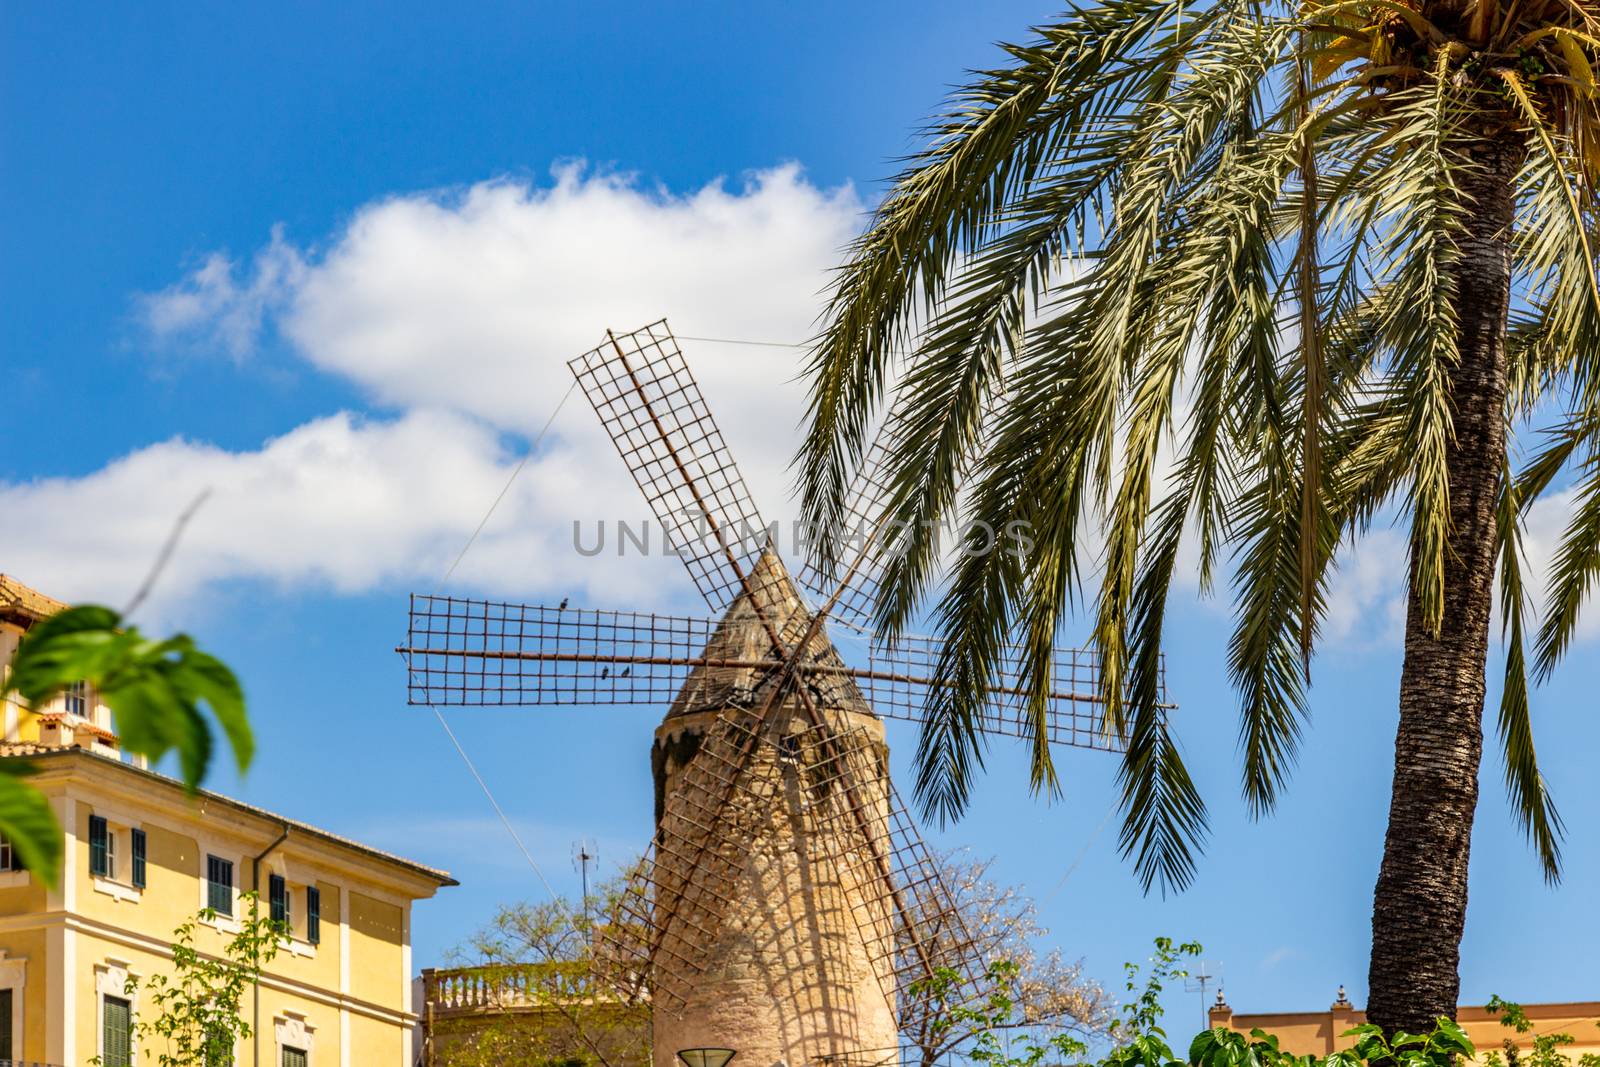 Windmill in Palma de Mallorca, Spain by reinerc